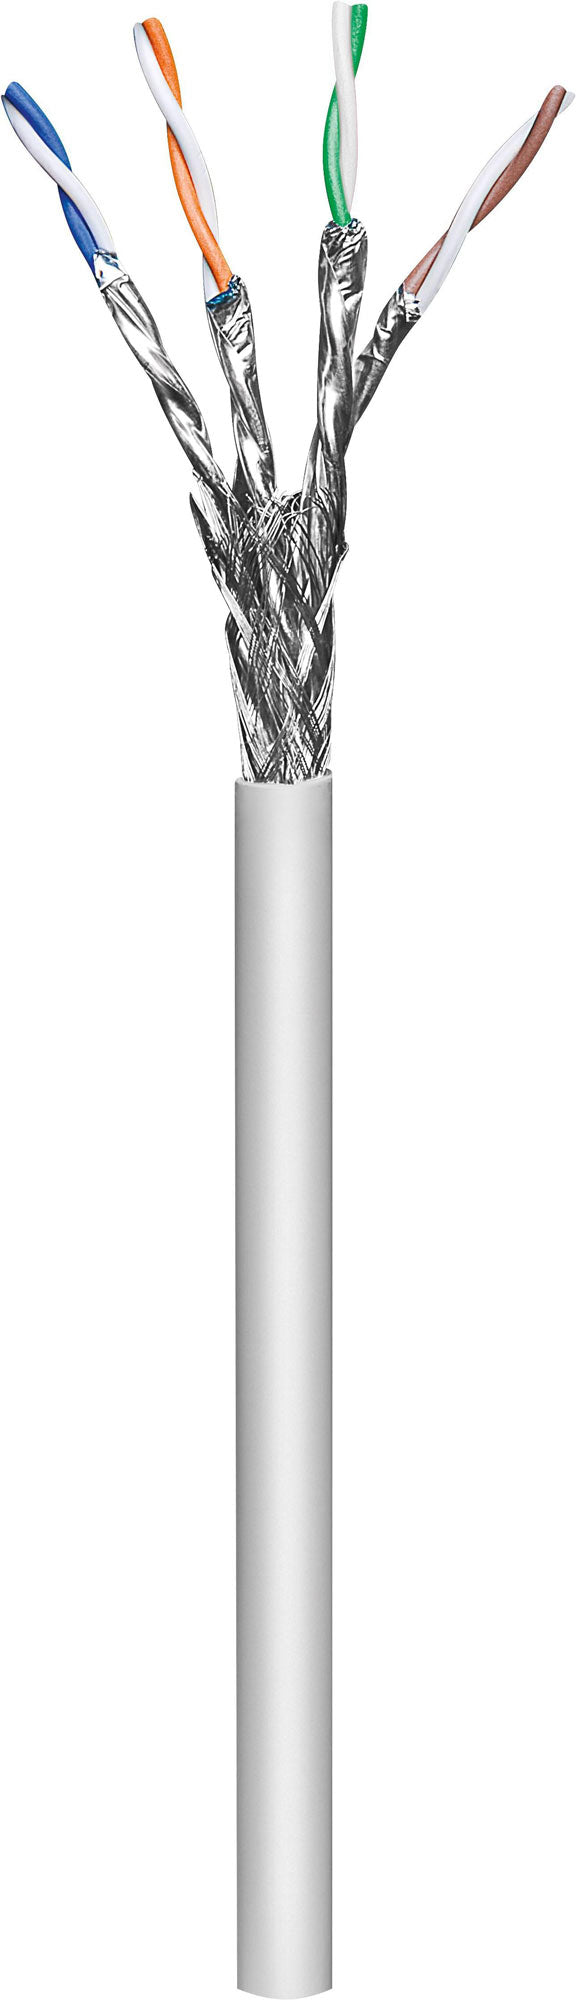 Câble au mètre solide Cat7, S/FTP, 23 AWG Image 1